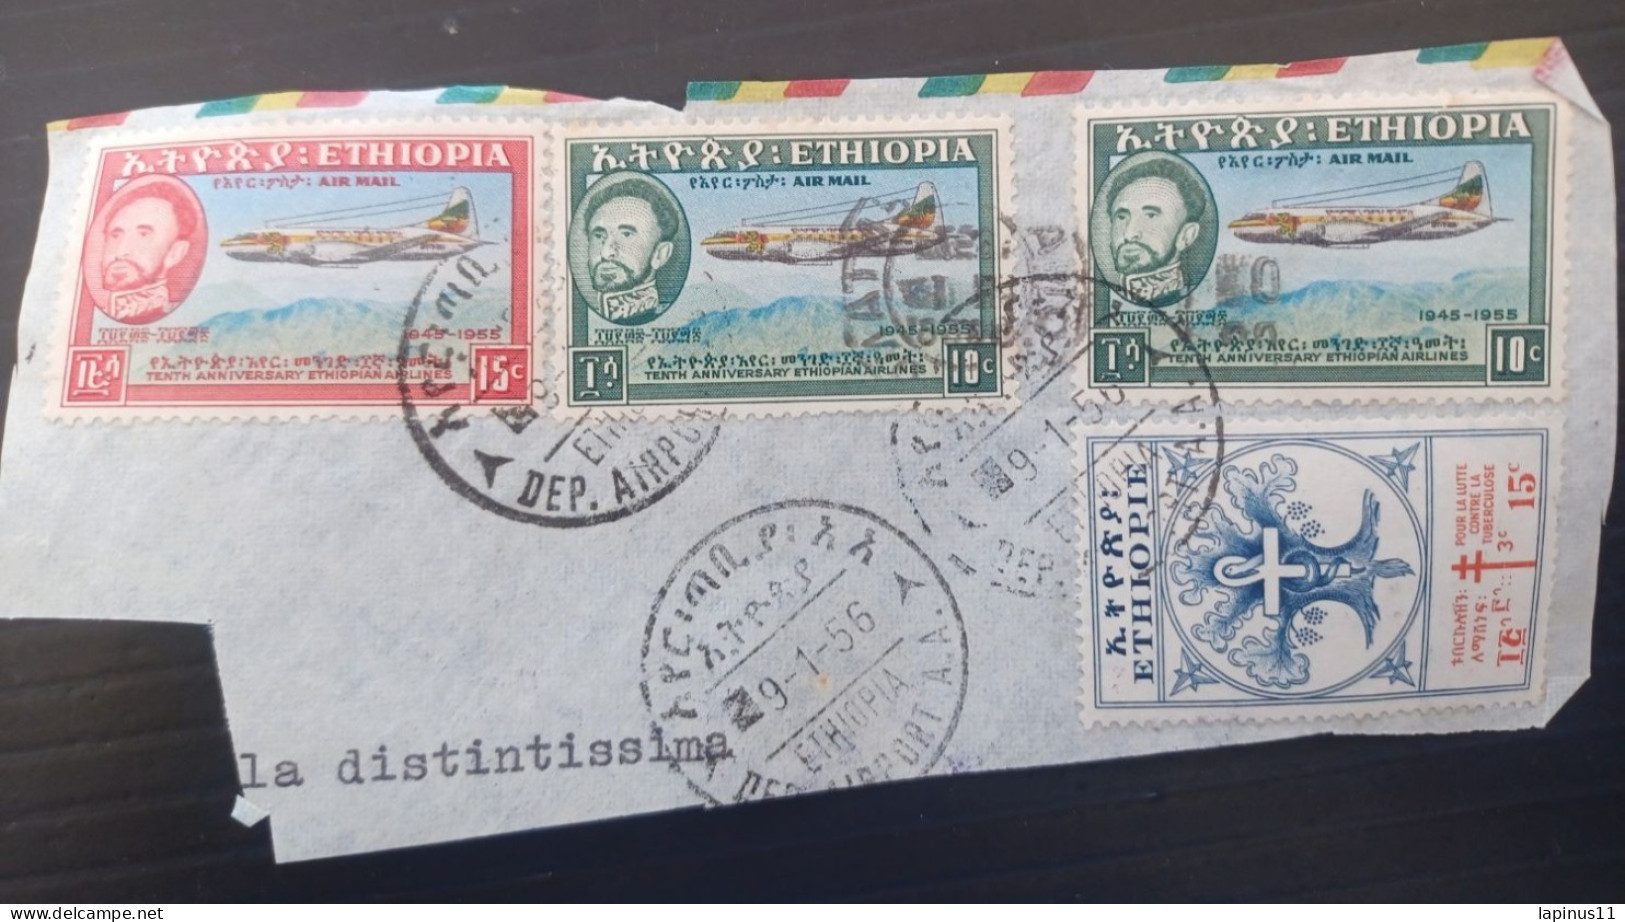 ETIOPIA 1956 AIRMAILYVERT N 304 LUTTE CONTRE LA TUBERCULOSE N 35-36 AIRMAIL FRAGMANT - Etiopía